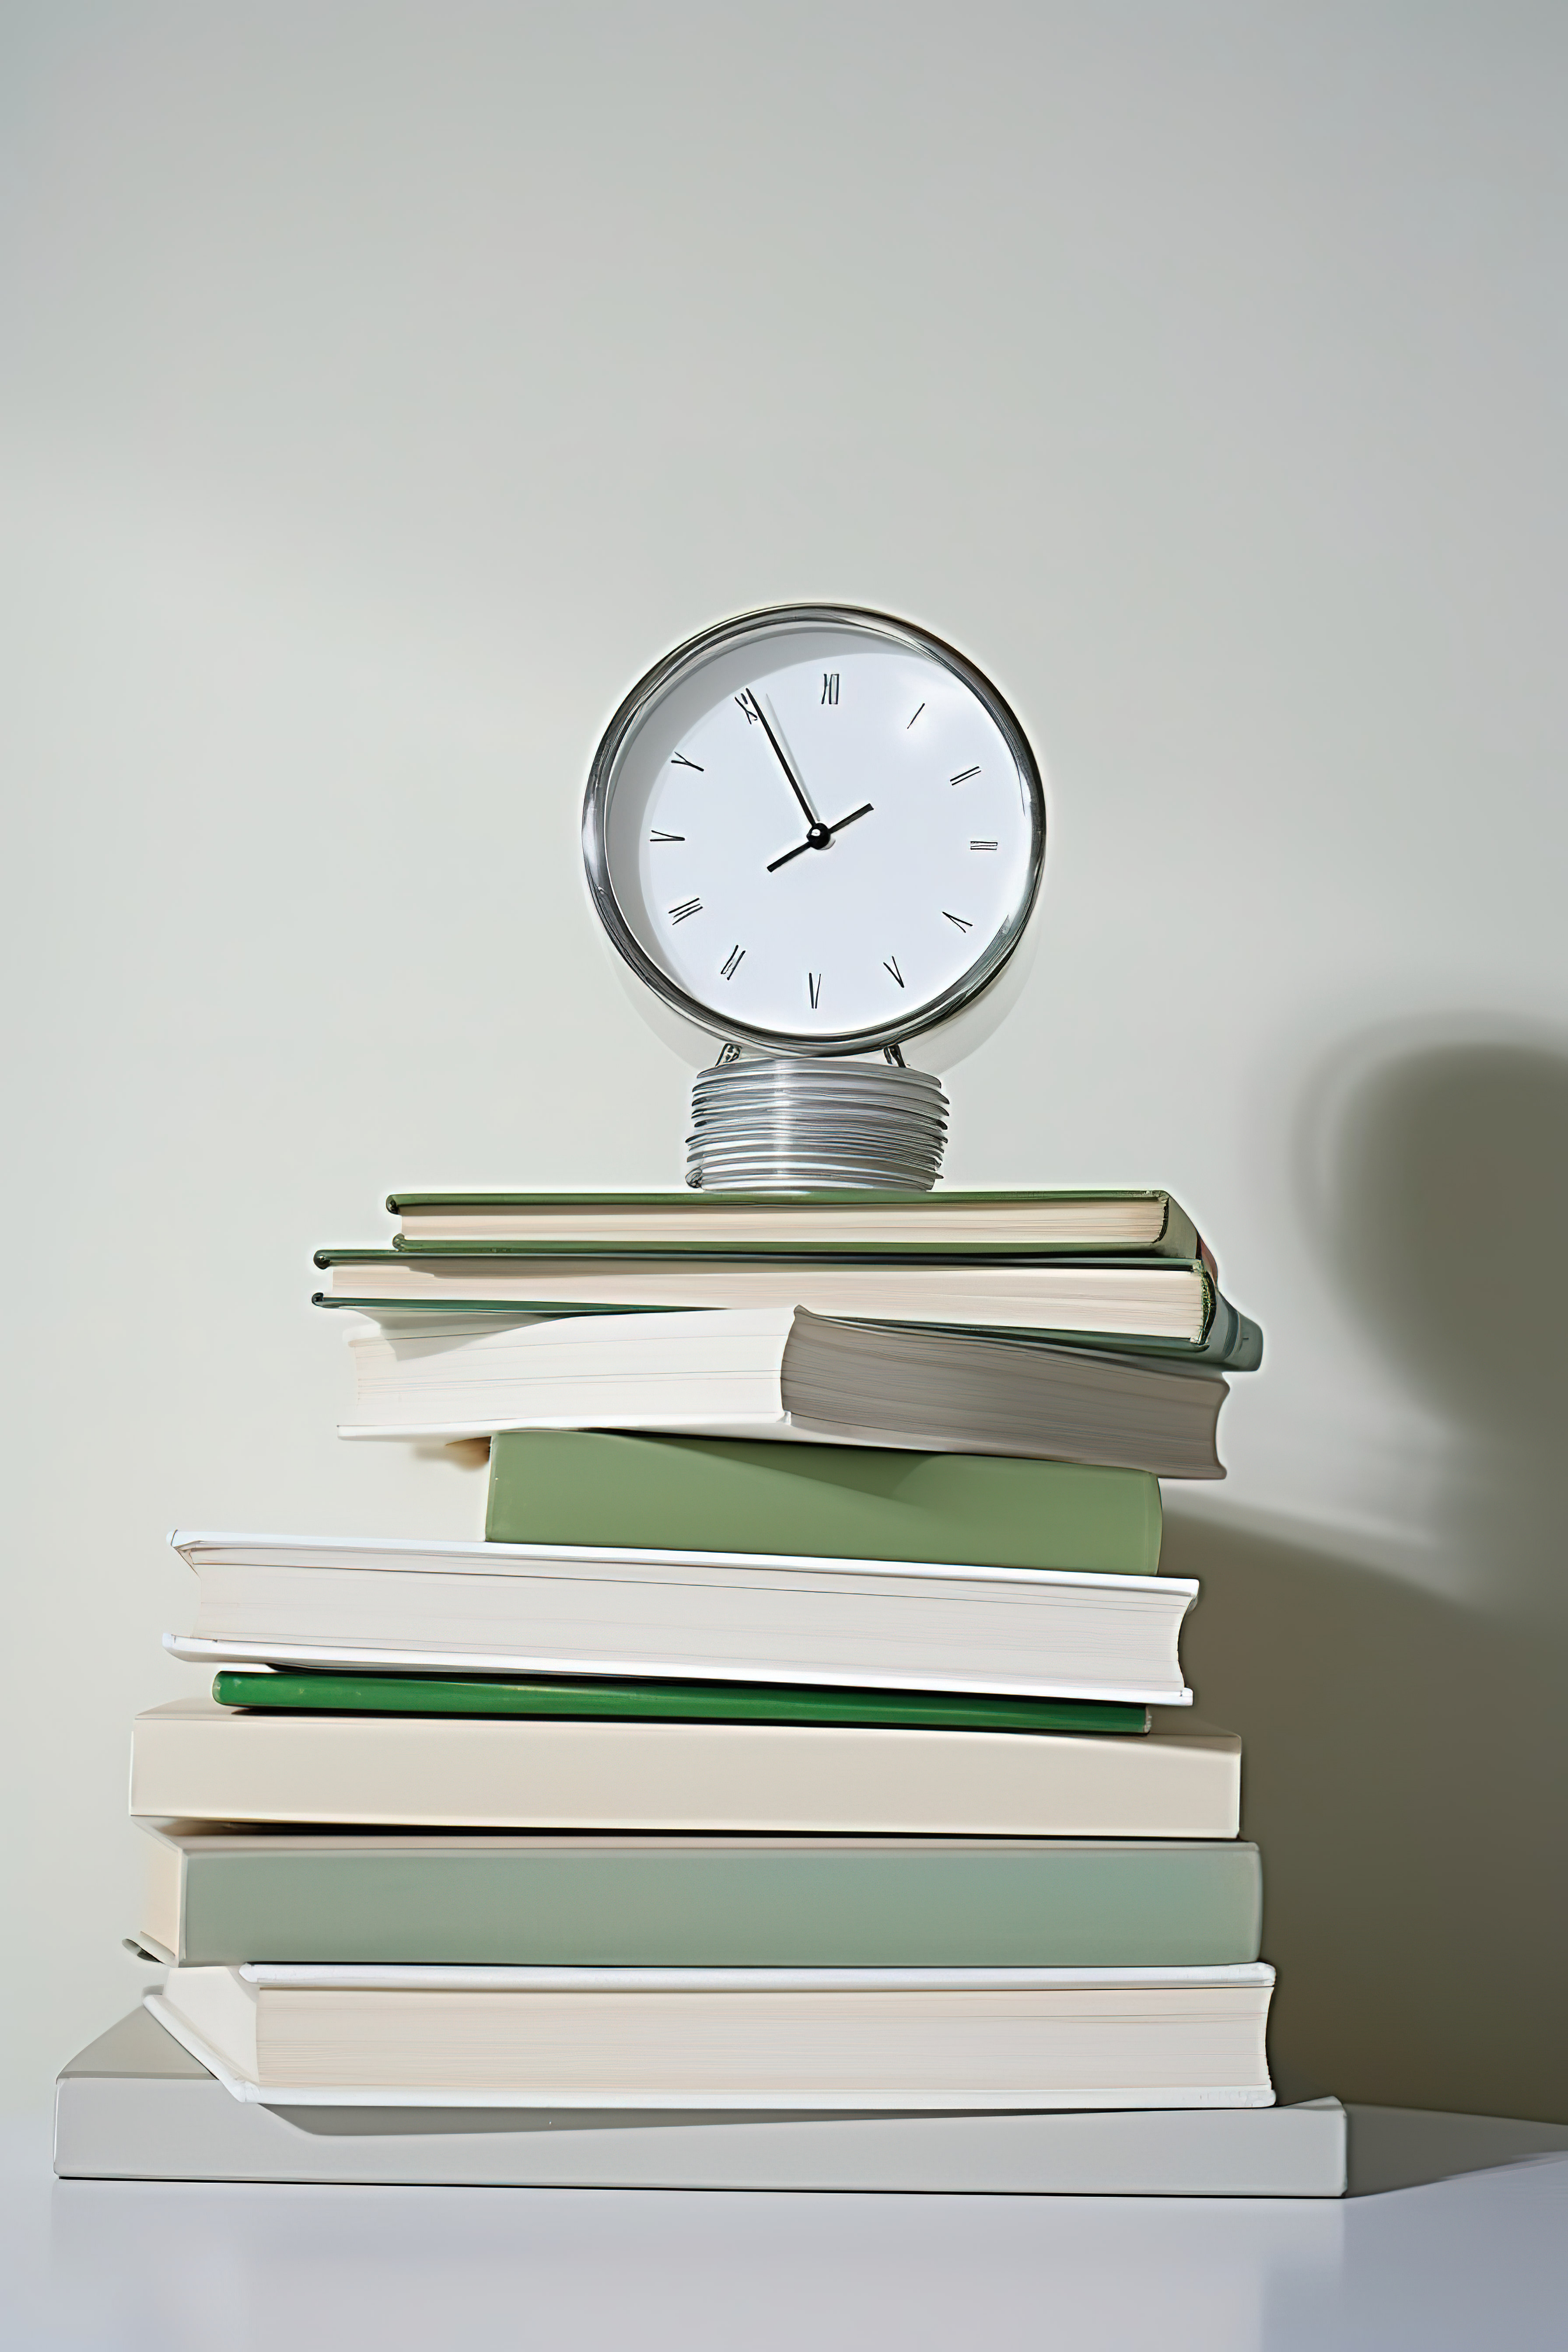 书本叠放在一起，而时钟则显示在背景中图片